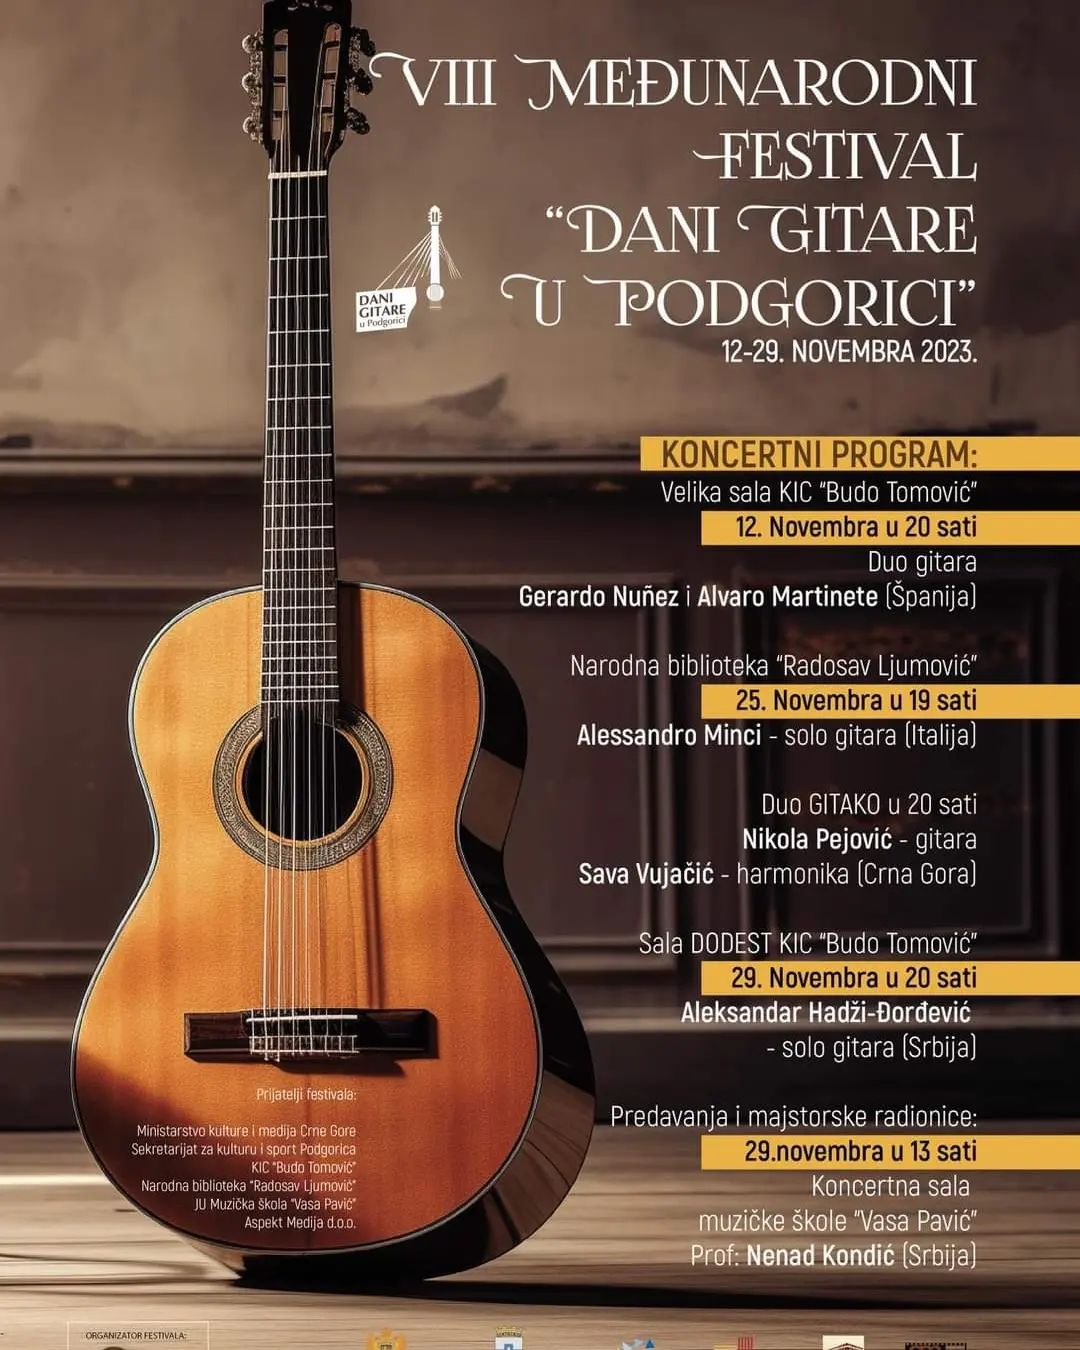 VIII Međunarodni festival "Dani gitare u Podgorici"